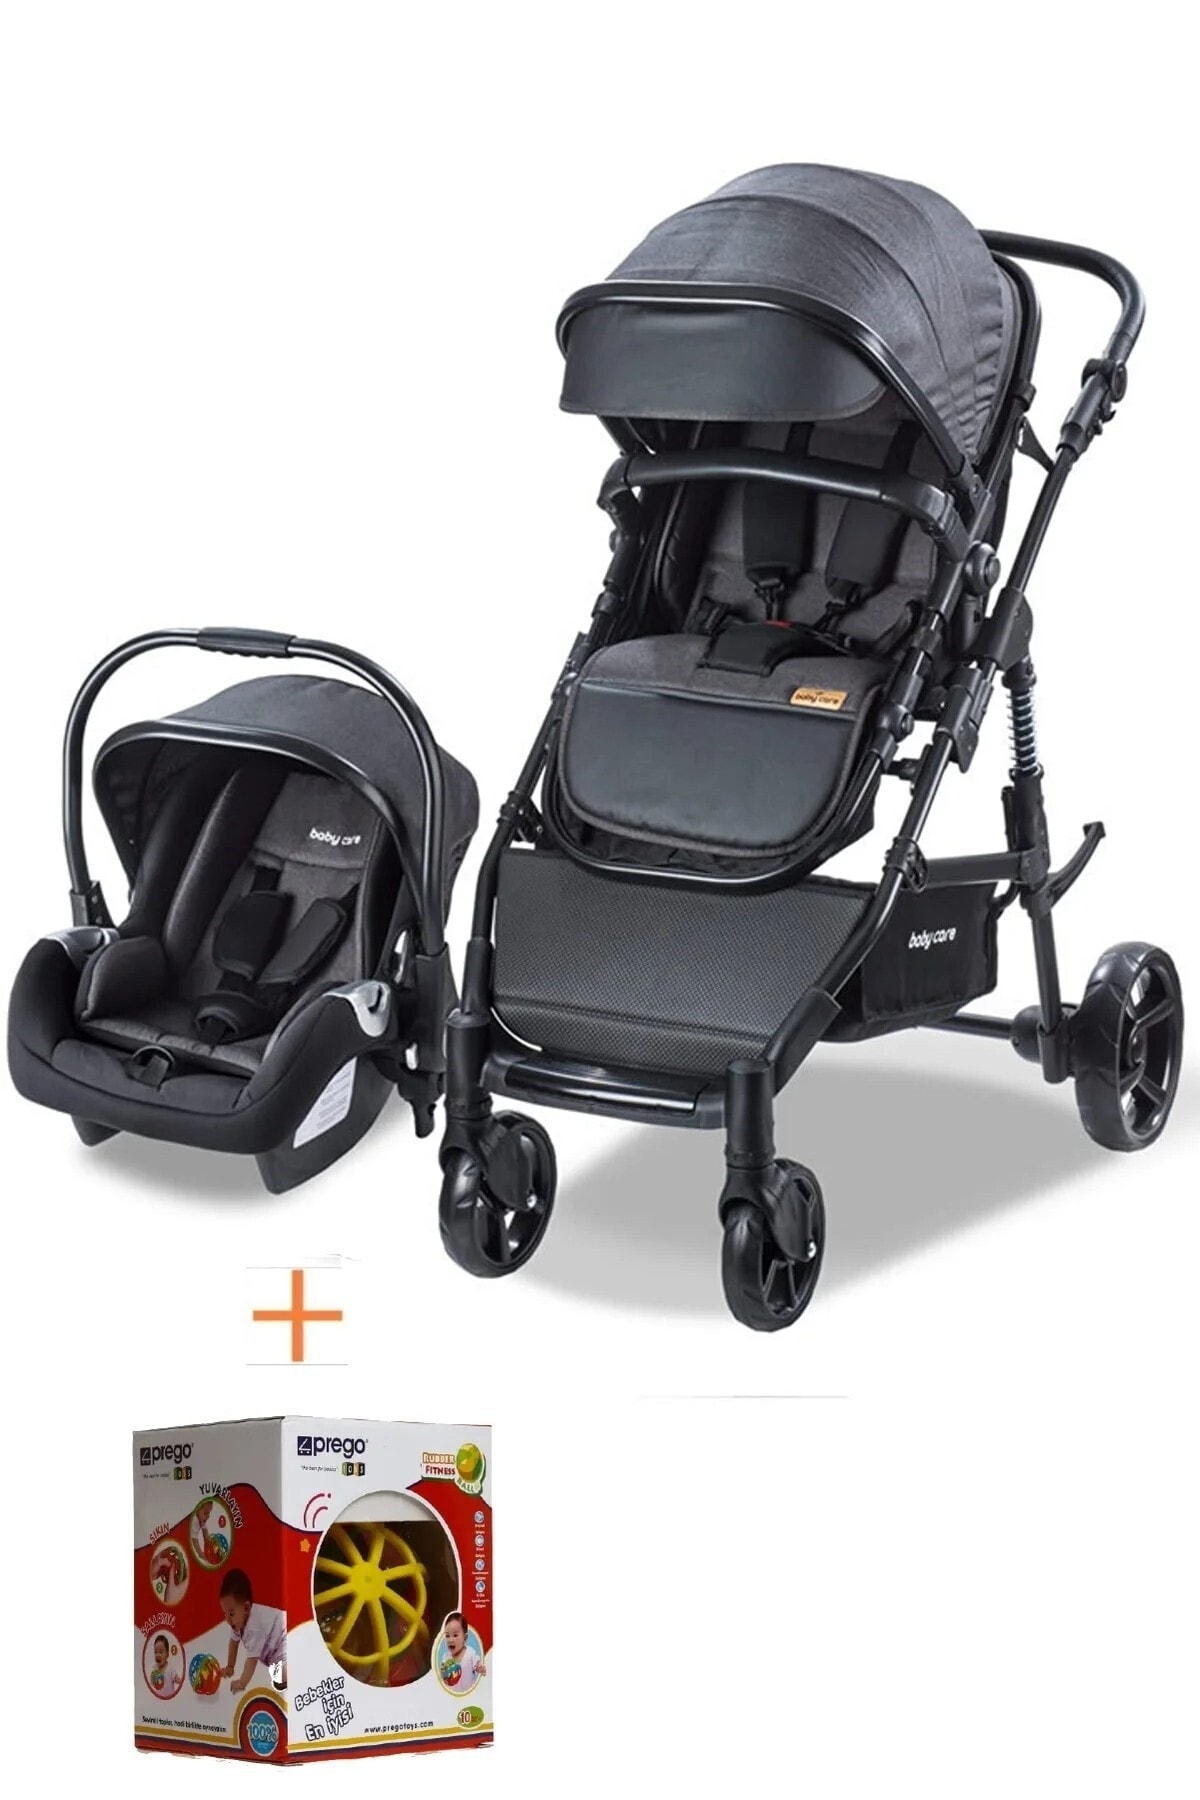 Baby Care Amortisörlü Katlanabilir Oto Koltuklu Travel Sistem Bebek Arabası Bc340 Oyuncak Armağanlı SN12302